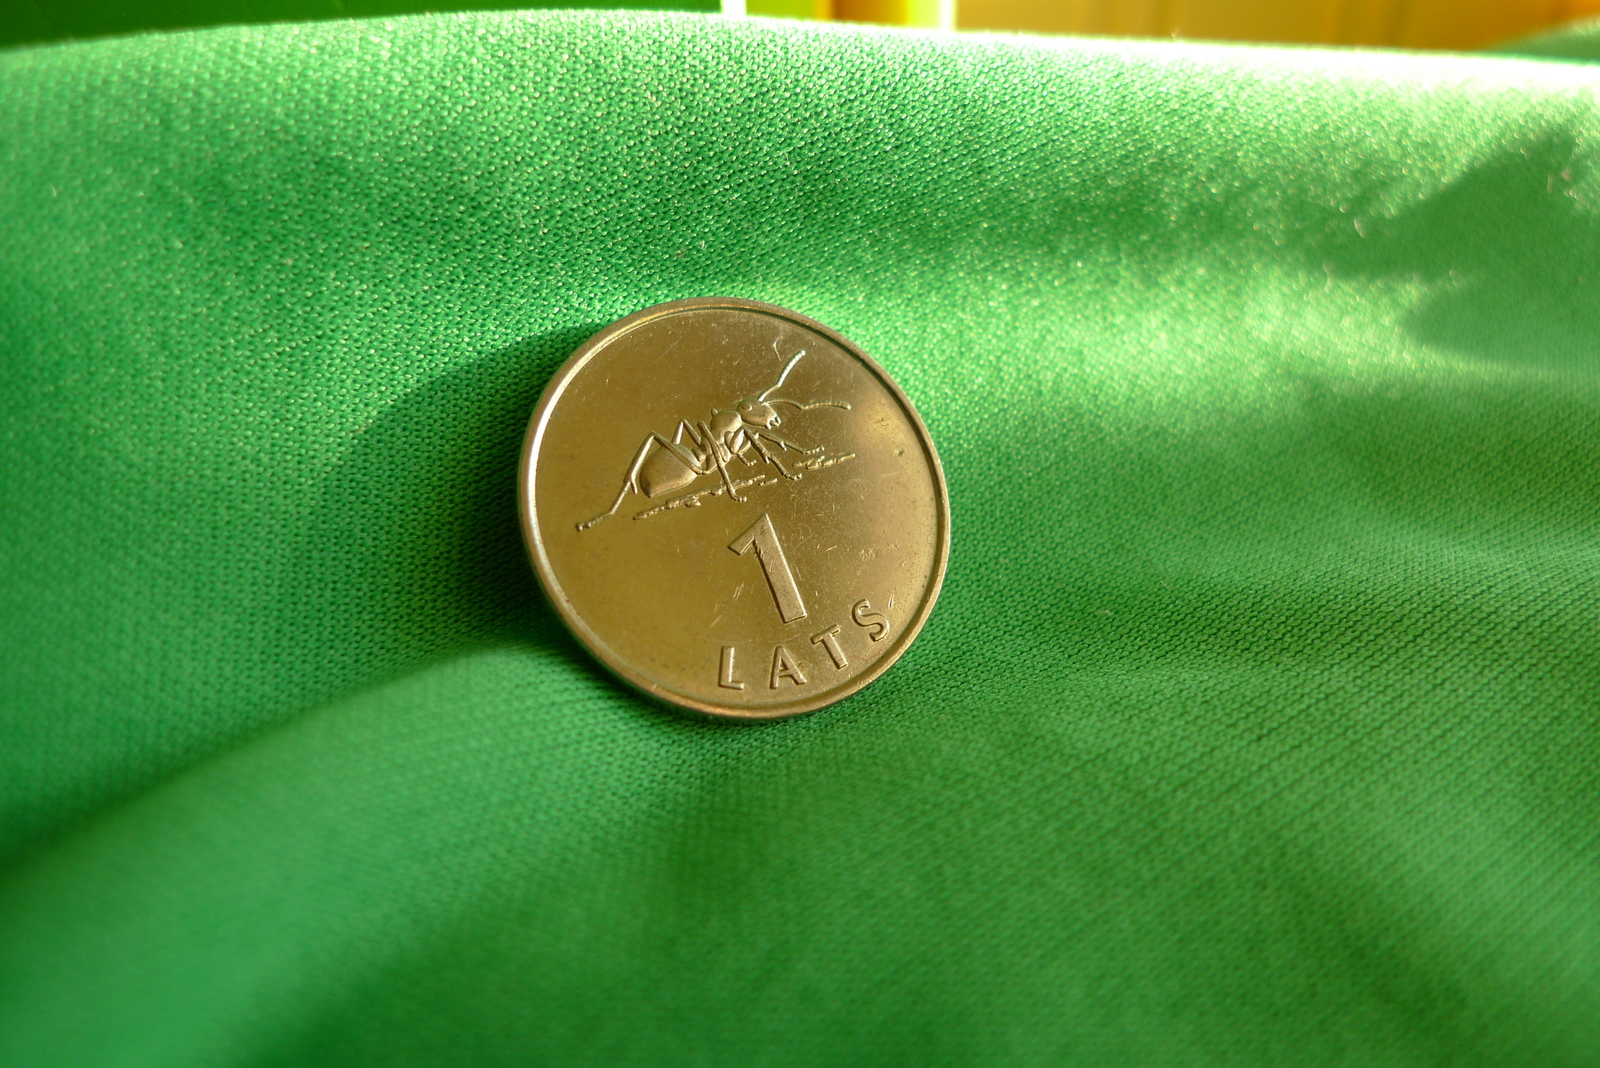 Latvia, 1 LATS 2003 ANT - Coin for Luck Souvenir Collection Collectibles coin - $79.00